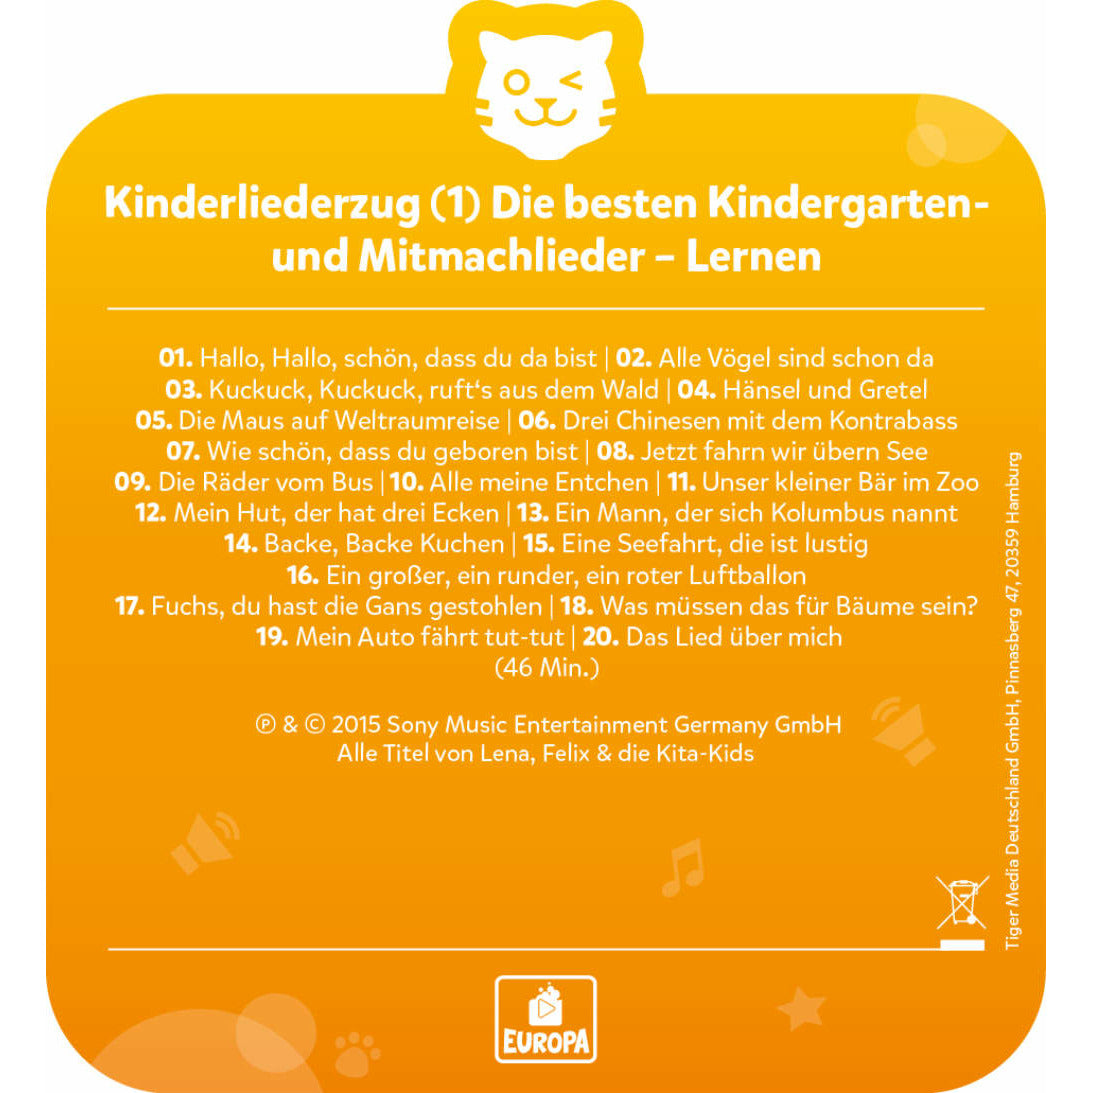 tigercard | Kinderliederzug | Folge 1: Die besten Kindergarten- und Mitmachlieder | Lernen